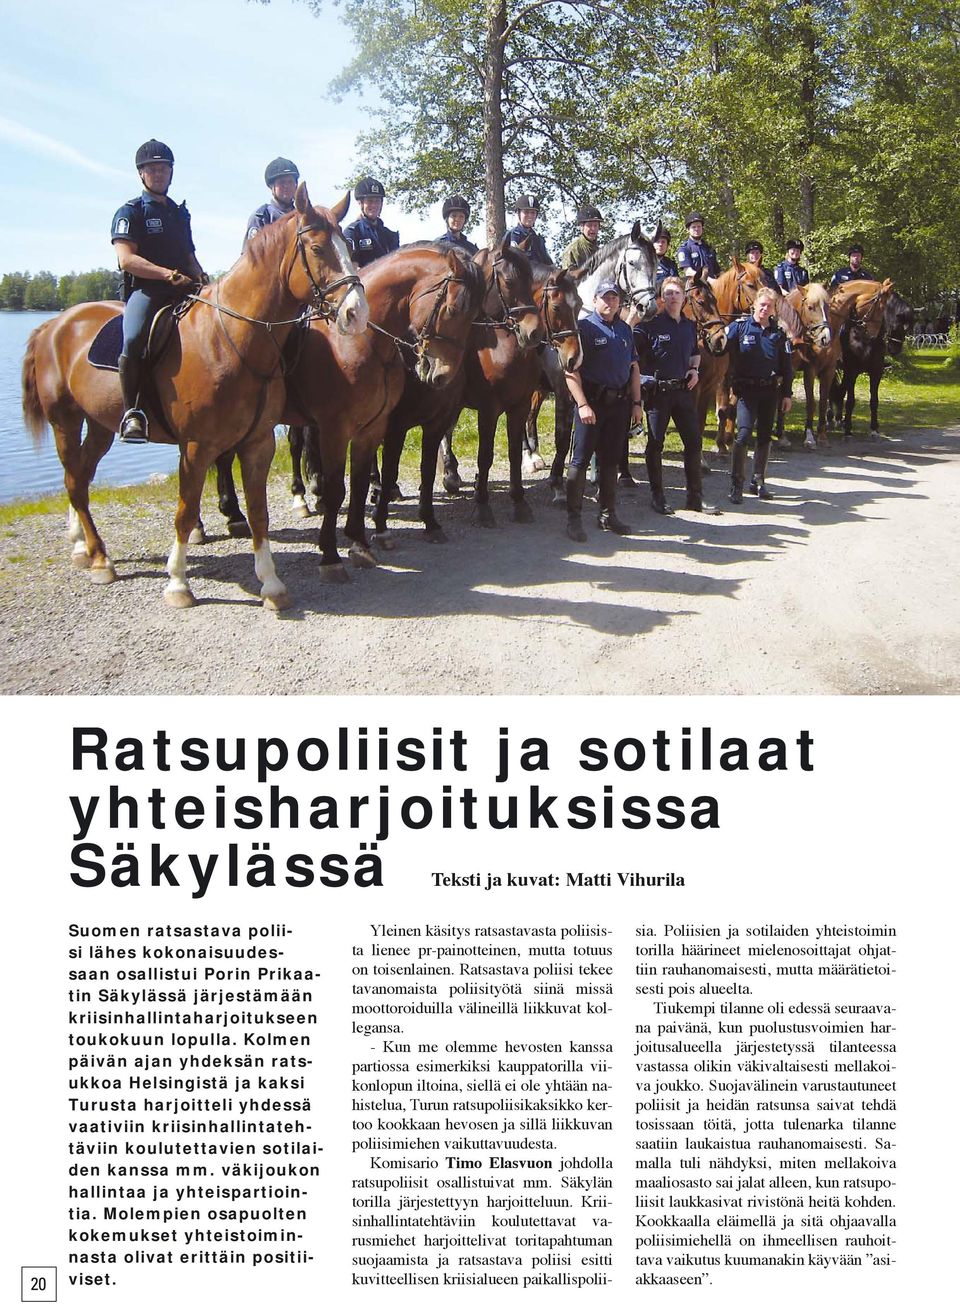 Kolmen päivän ajan yhdeksän ratsukkoa Helsingistä ja kaksi Turusta harjoitteli yhdessä vaativiin kriisinhallintatehtäviin koulutettavien sotilaiden kanssa mm.